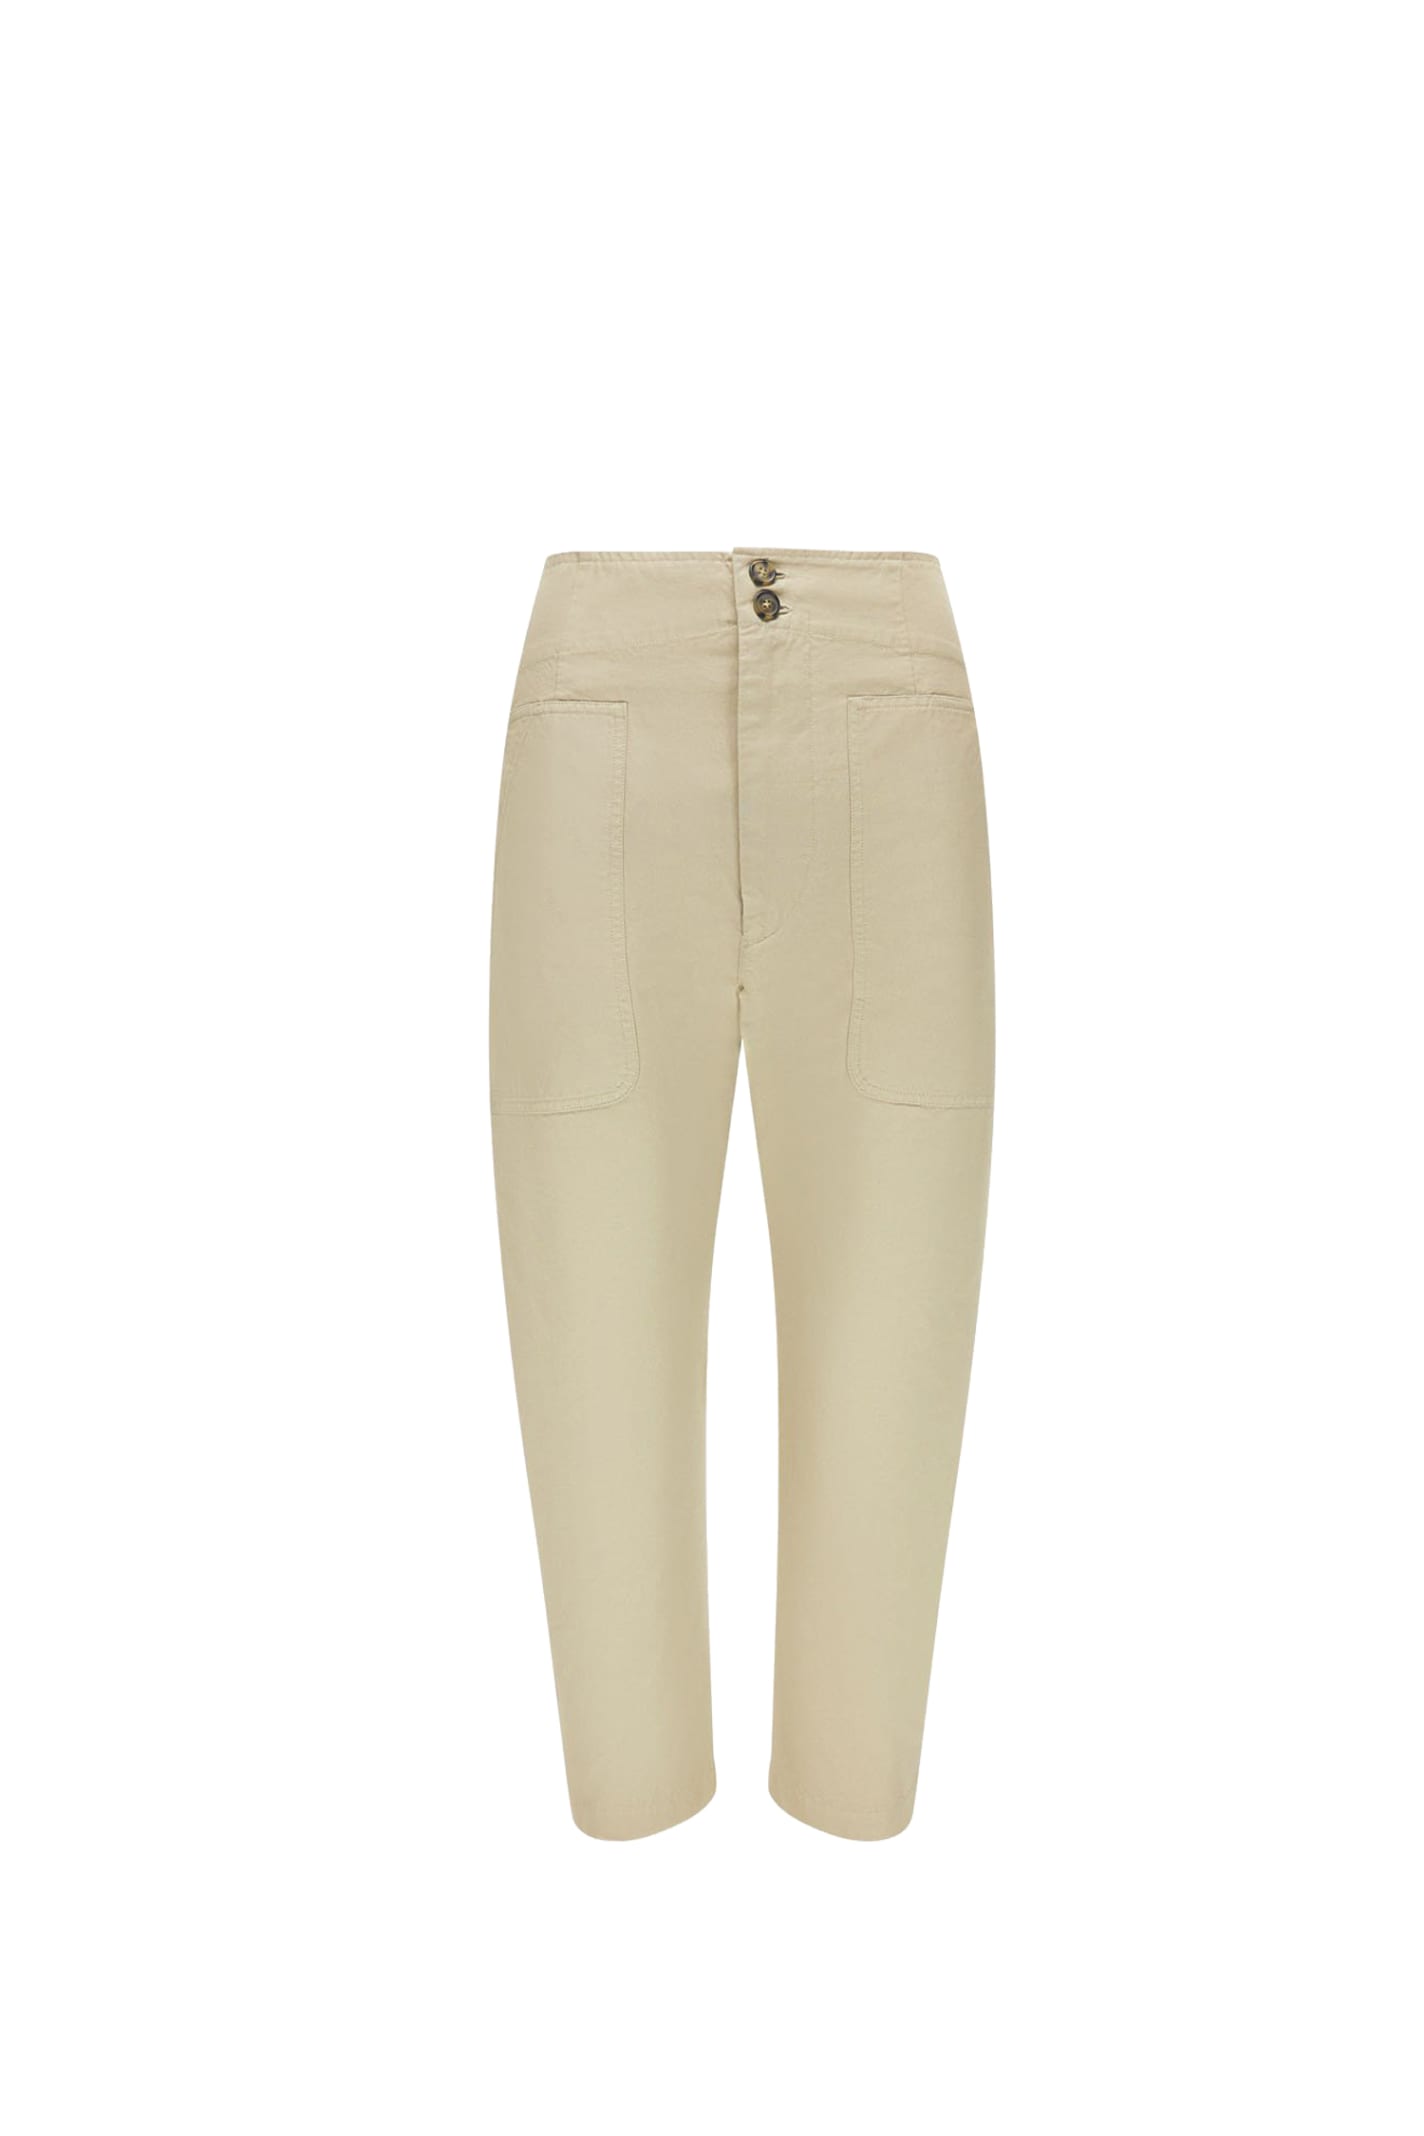 Isabel Marant Cotton Pants